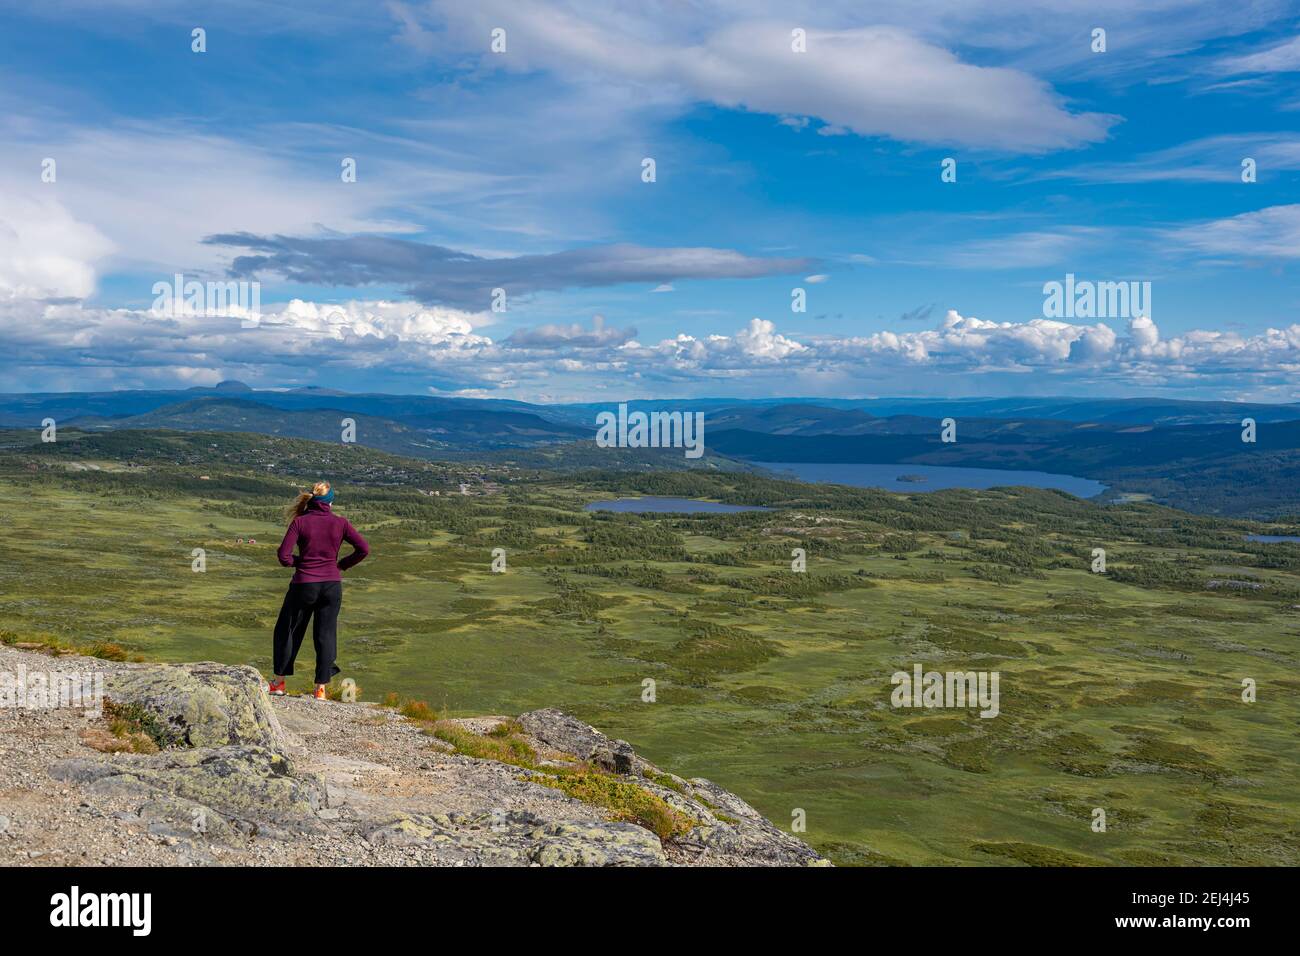 Randonneur regardant sur la toundra, la toundra, paysage vallonné avec des lacs, Oystre Slidre, parc national de Jotunheimen, Norwege Banque D'Images